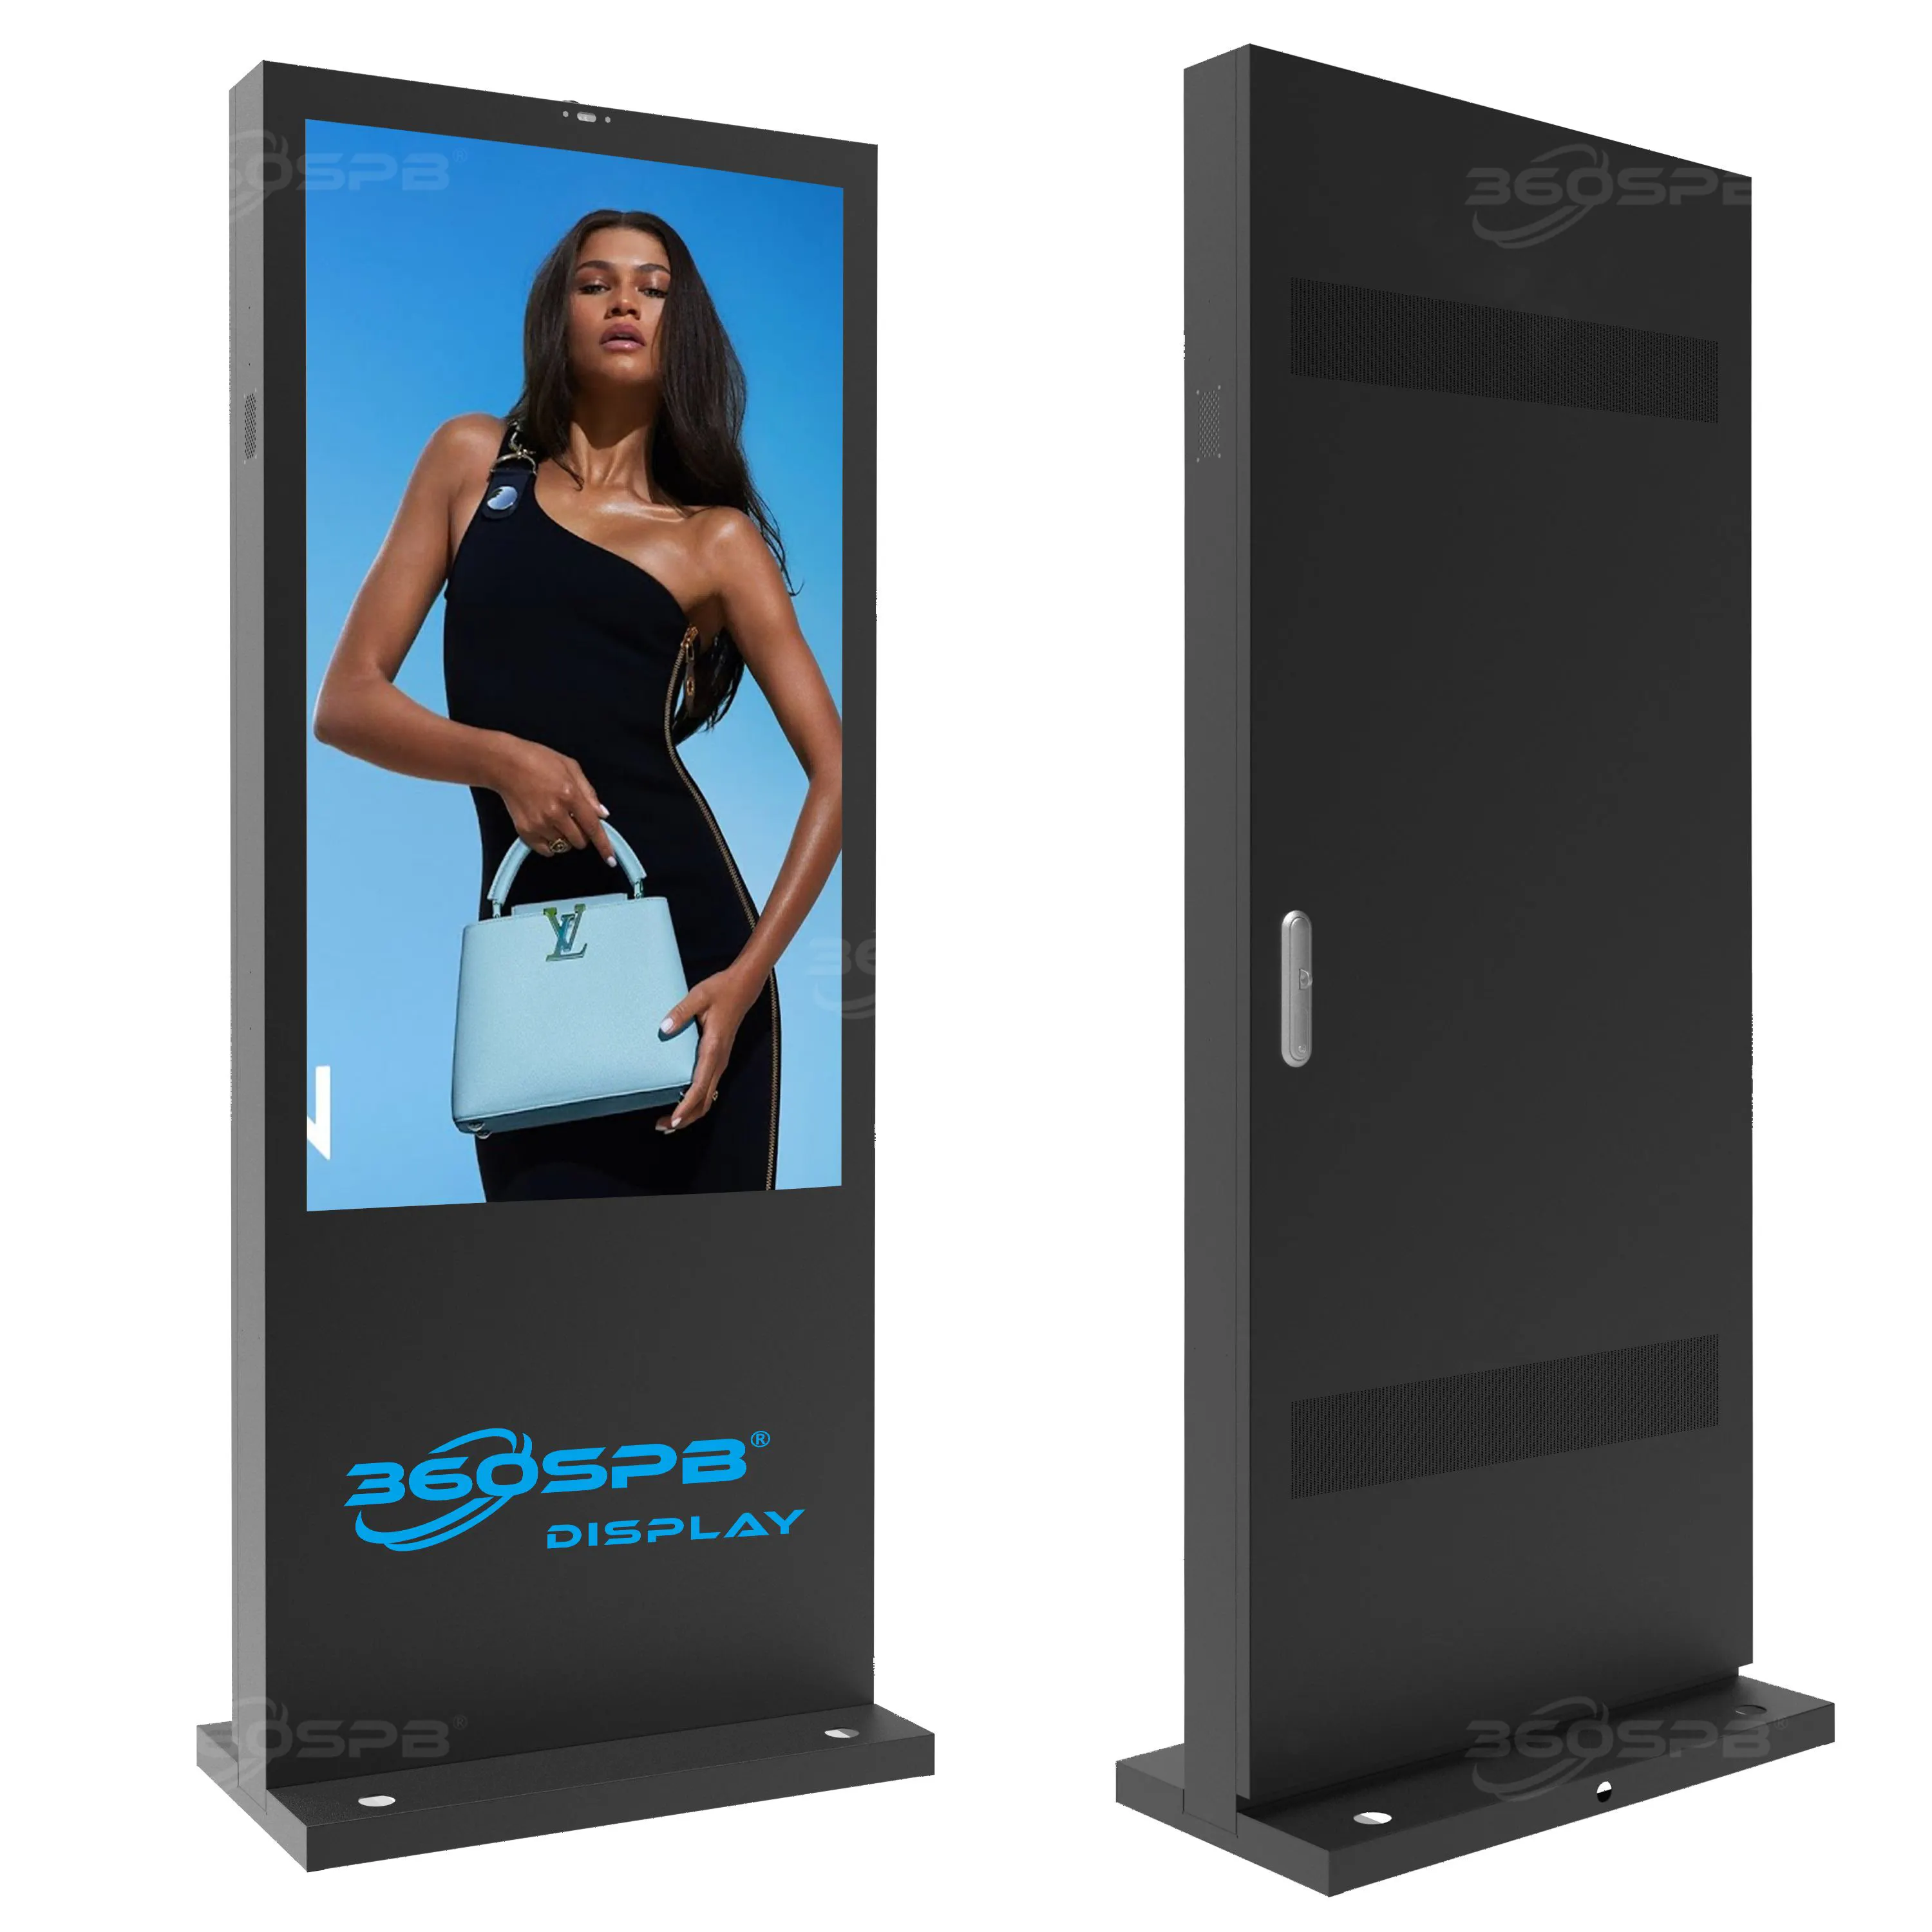 विज्ञापन स्क्रीन के लिए 360SPB टाइप B 49'' एलसीडी डिस्प्ले 4K वीडियो आउटडोर स्टैंडिंग डिजिटल साइनेज एंड्रॉइड 11 टच स्क्रीन मॉनिटर